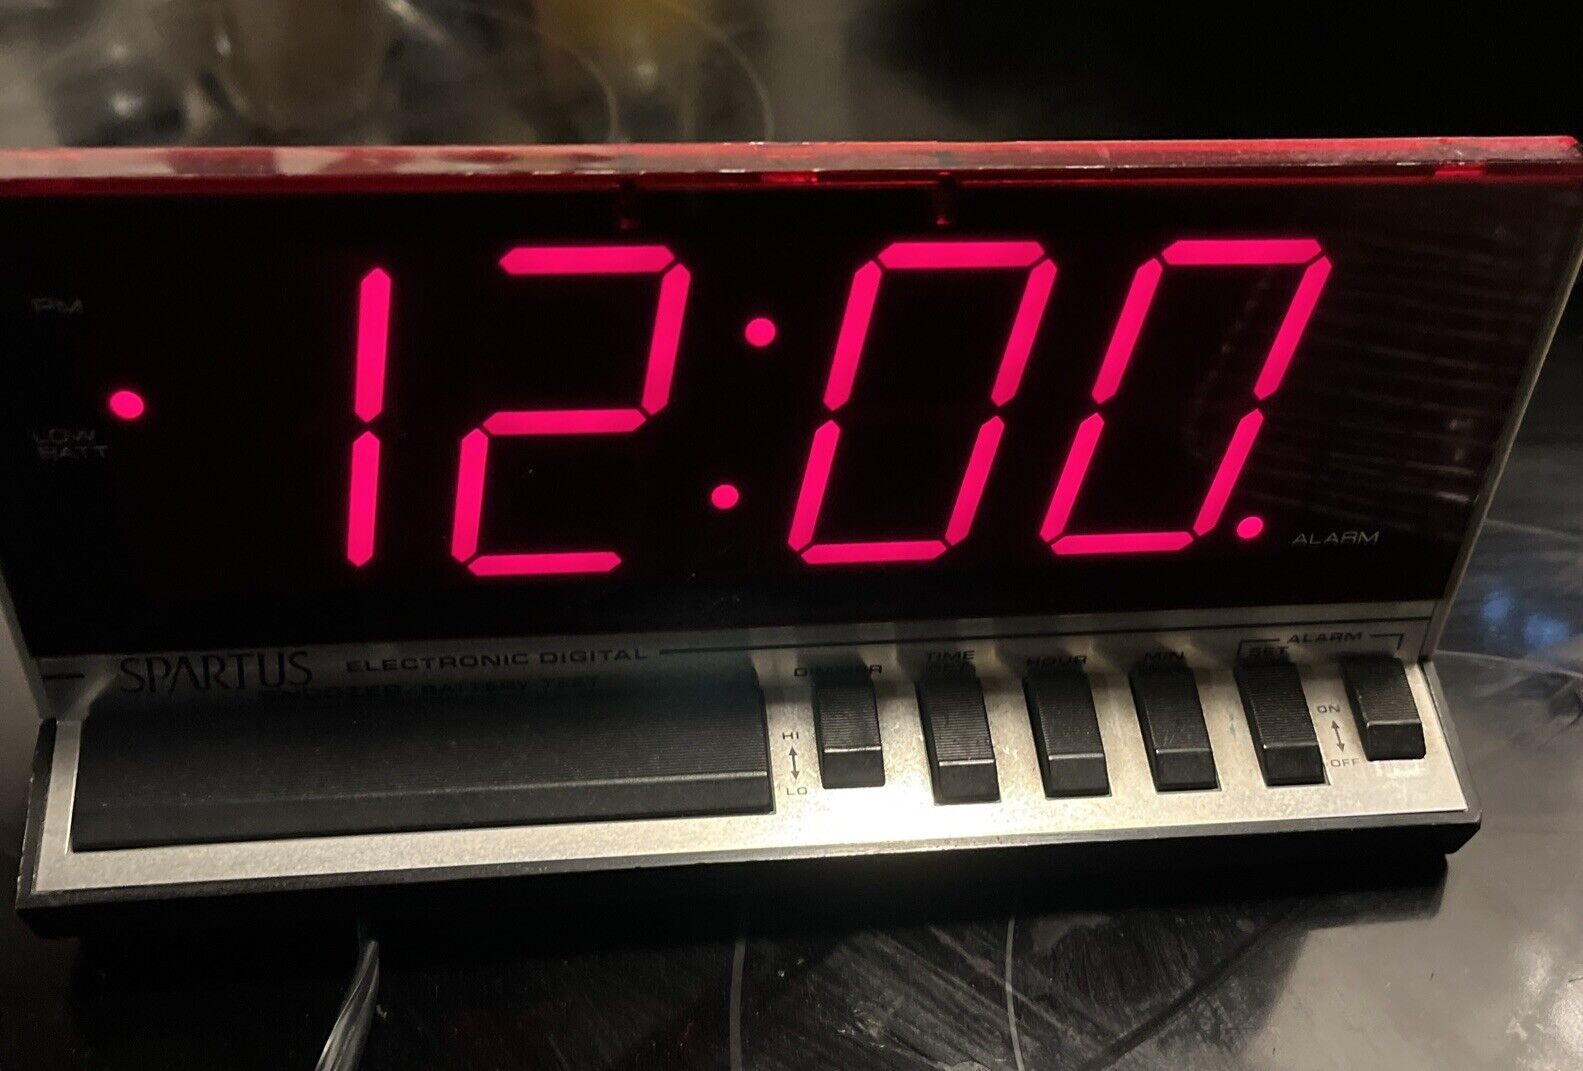 Vintage Spartus Digital Alarm Clock Model 1140 Battery Backup Red Display Tested